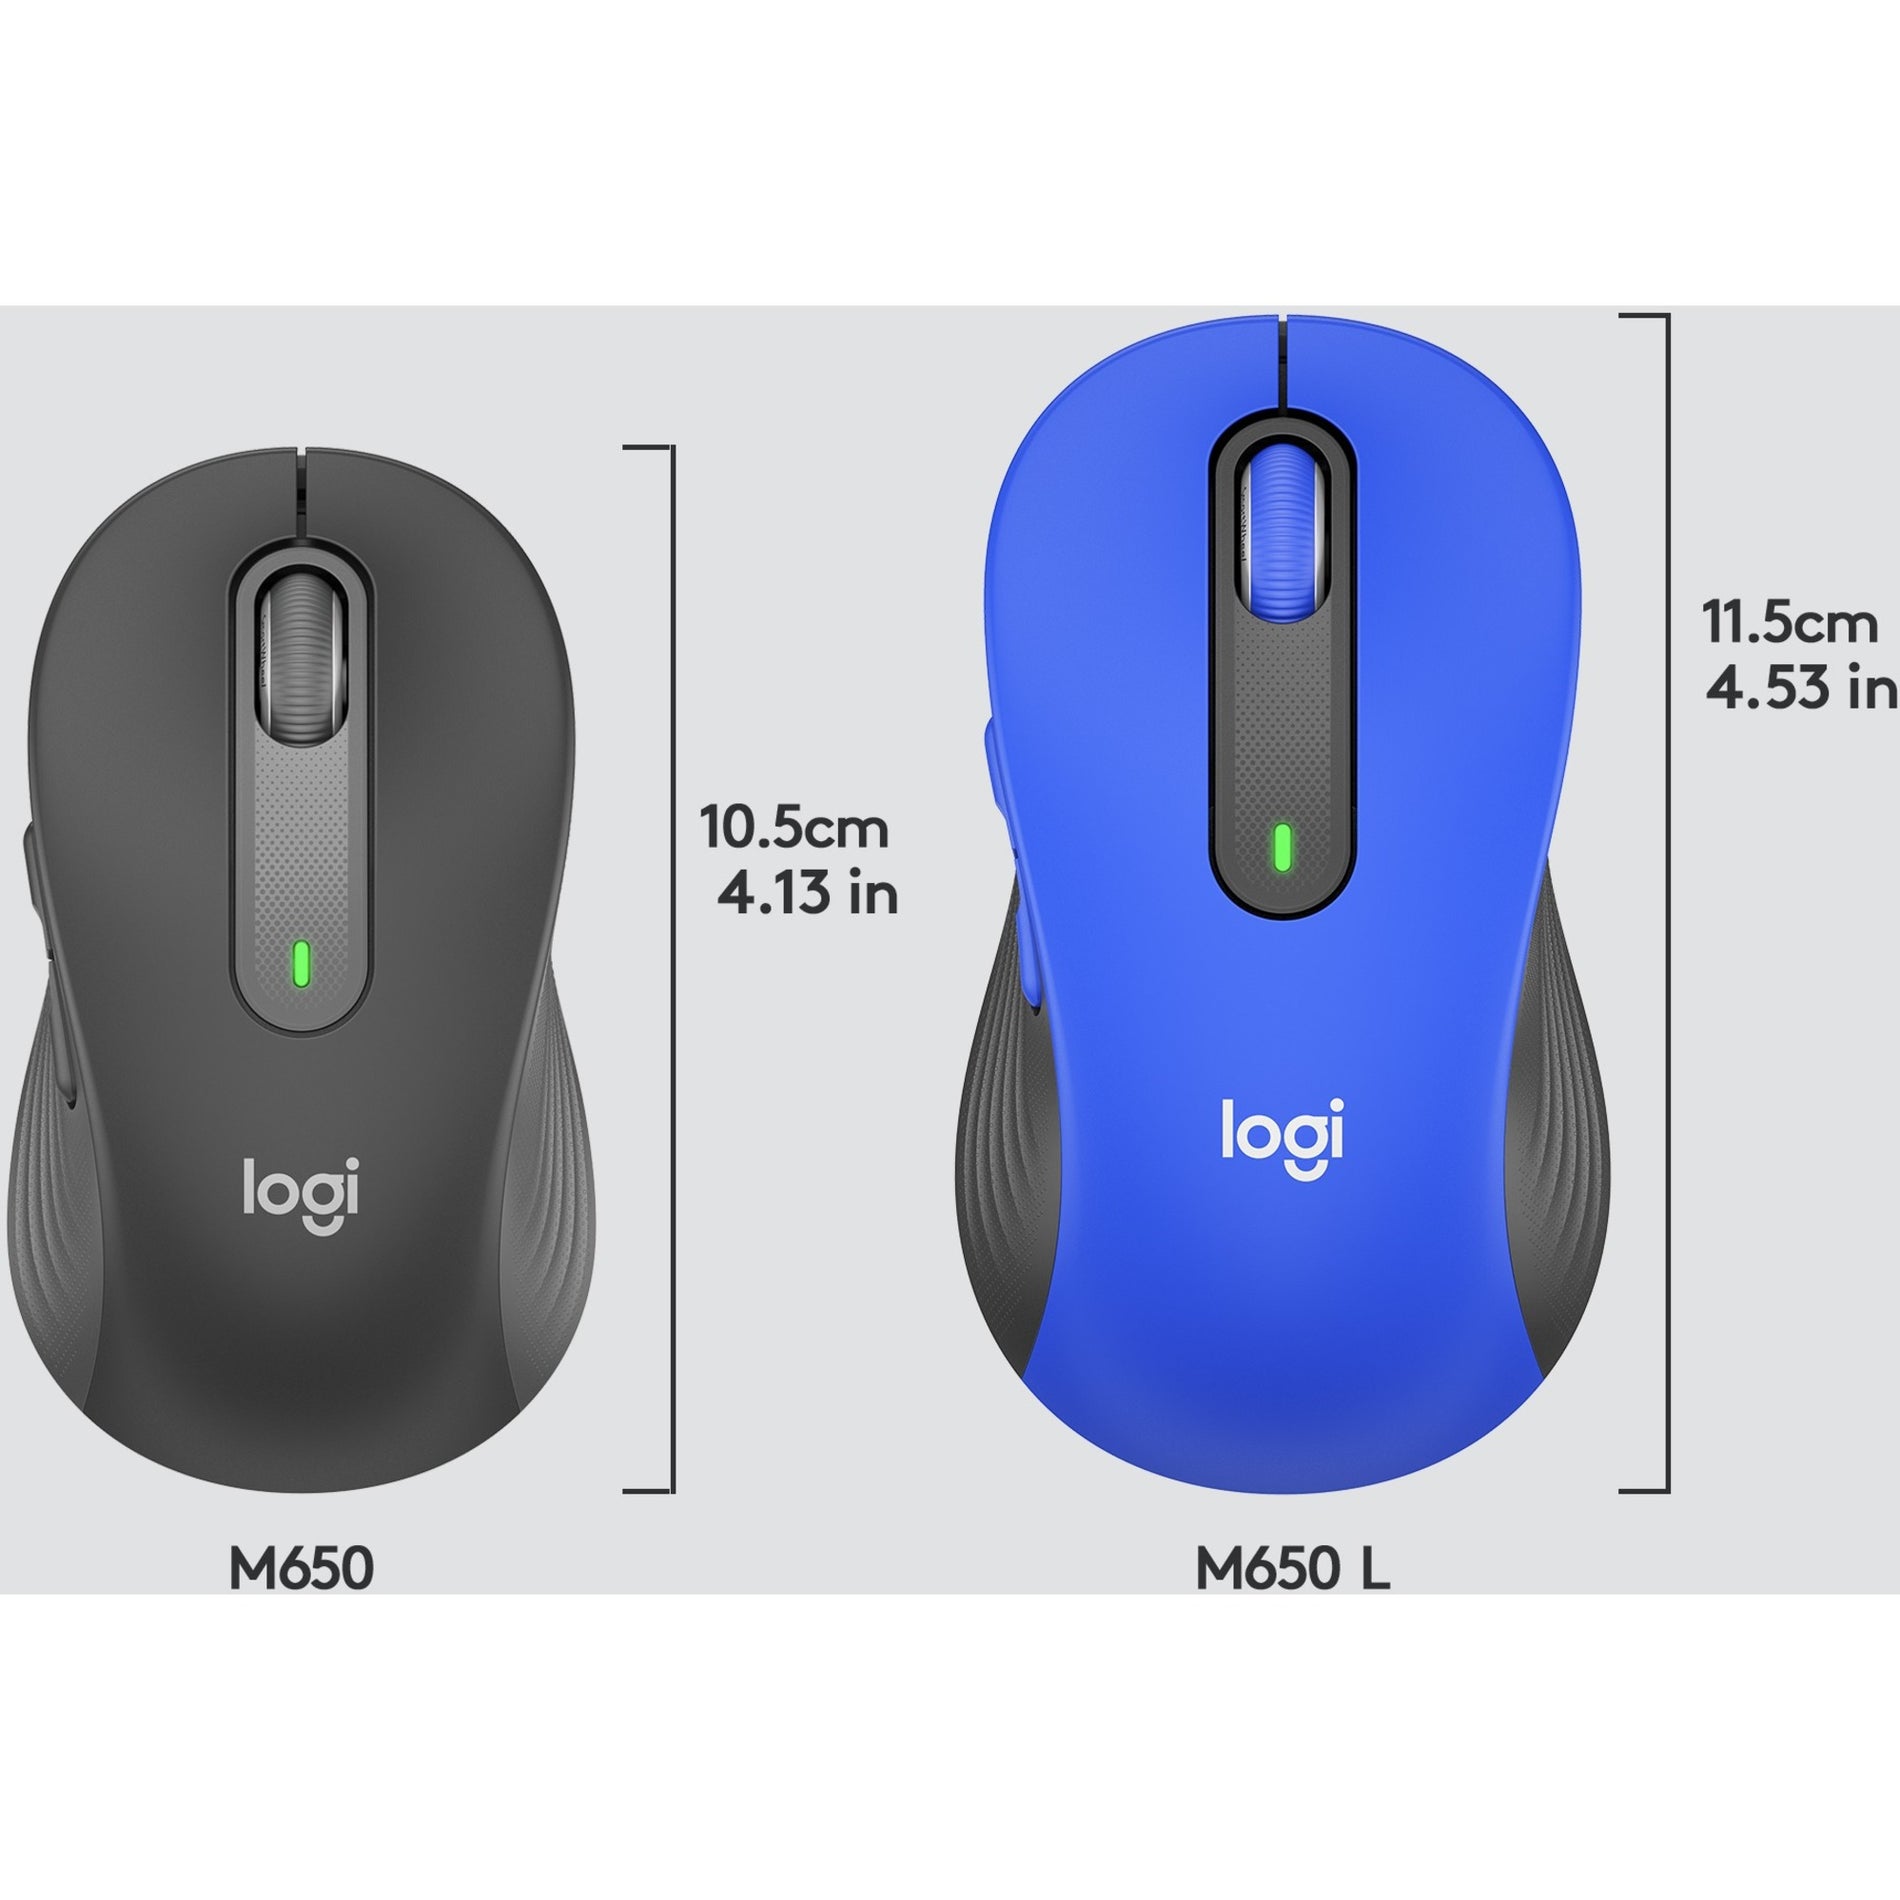 Logitech 910-006232 Signature M650 L (Blue) Wireless Mouse, Large Size, 2000 DPI, USB Receiver